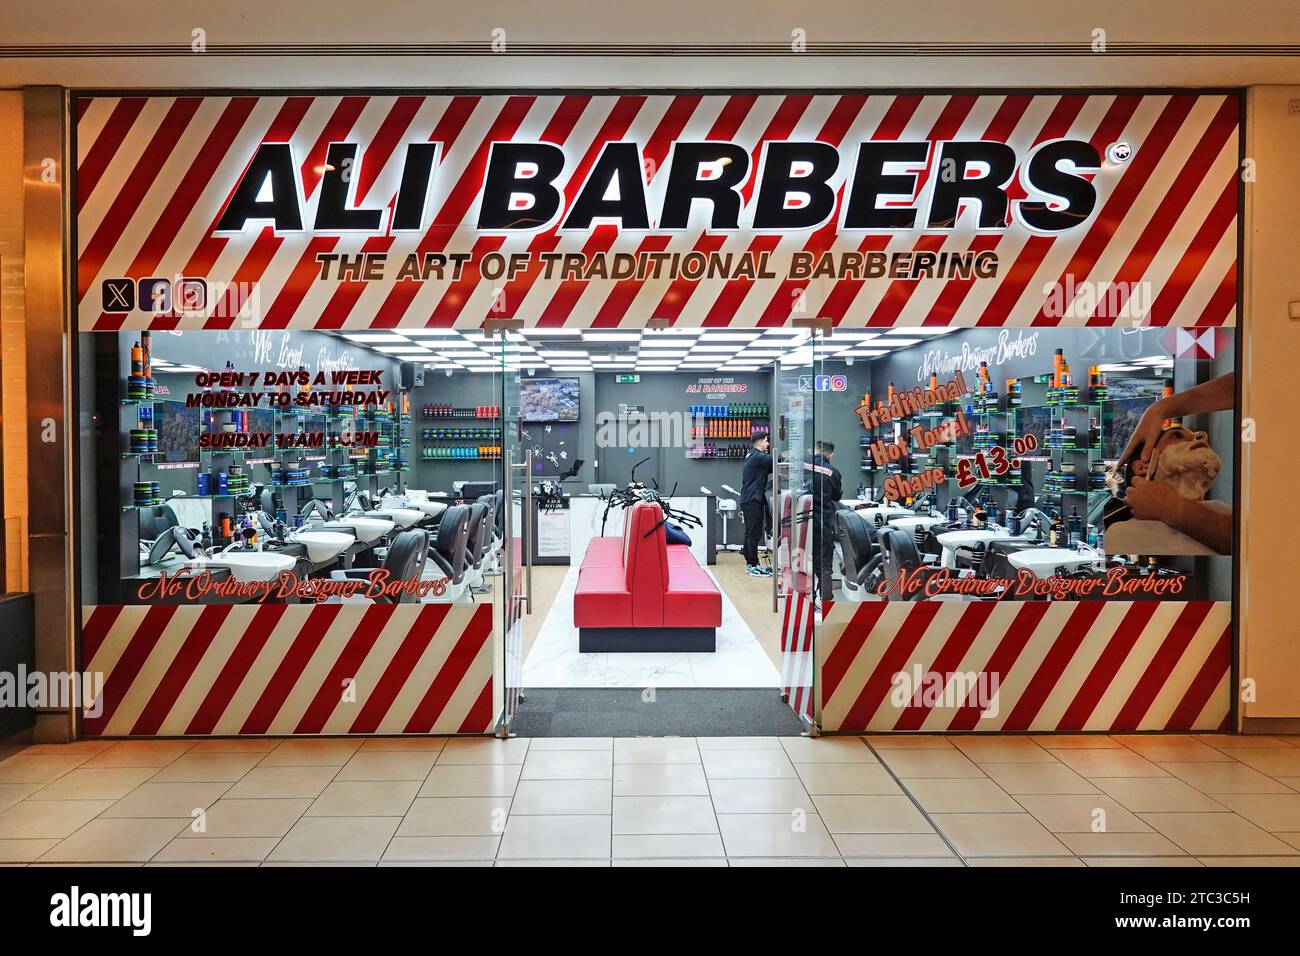 Ali Barbers « vient d'ouvrir » tôt le matin vue sur les vitrines de la boutique nouveaux locaux entièrement équipés de salon de coiffure commerciaux intérieurs courrier Essex Angleterre Royaume-Uni Banque D'Images